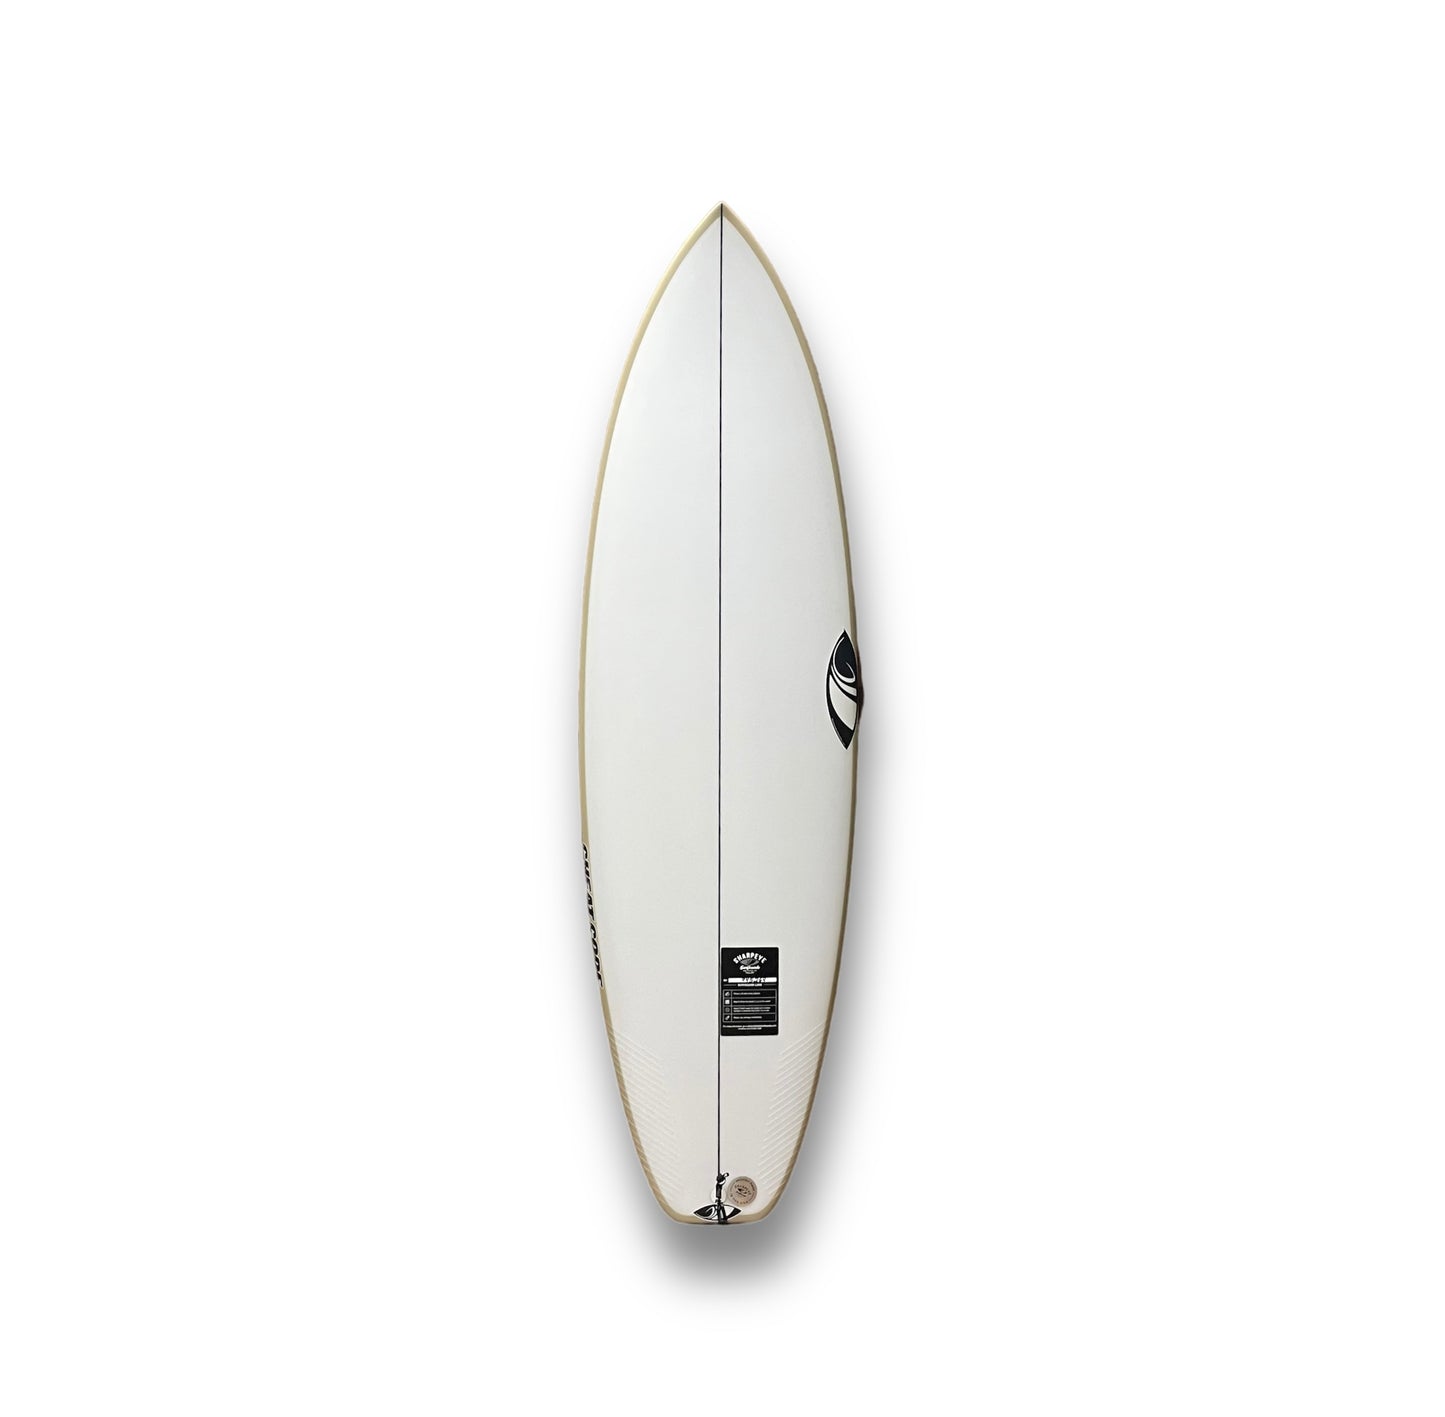 SHARP EYE CHEAT CODE 5'9" SURFBOARD